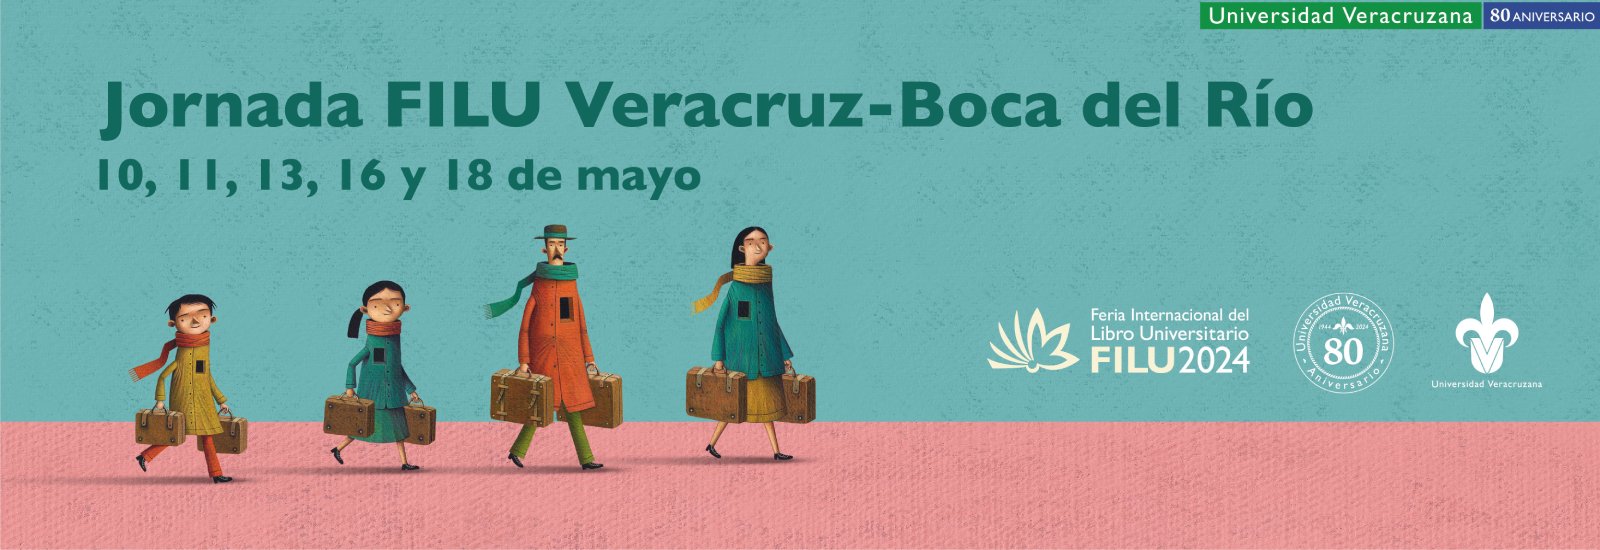 Jornada FILU Veracruz-Boca del Río 10, 11, 13, 16 y 18 de mayo